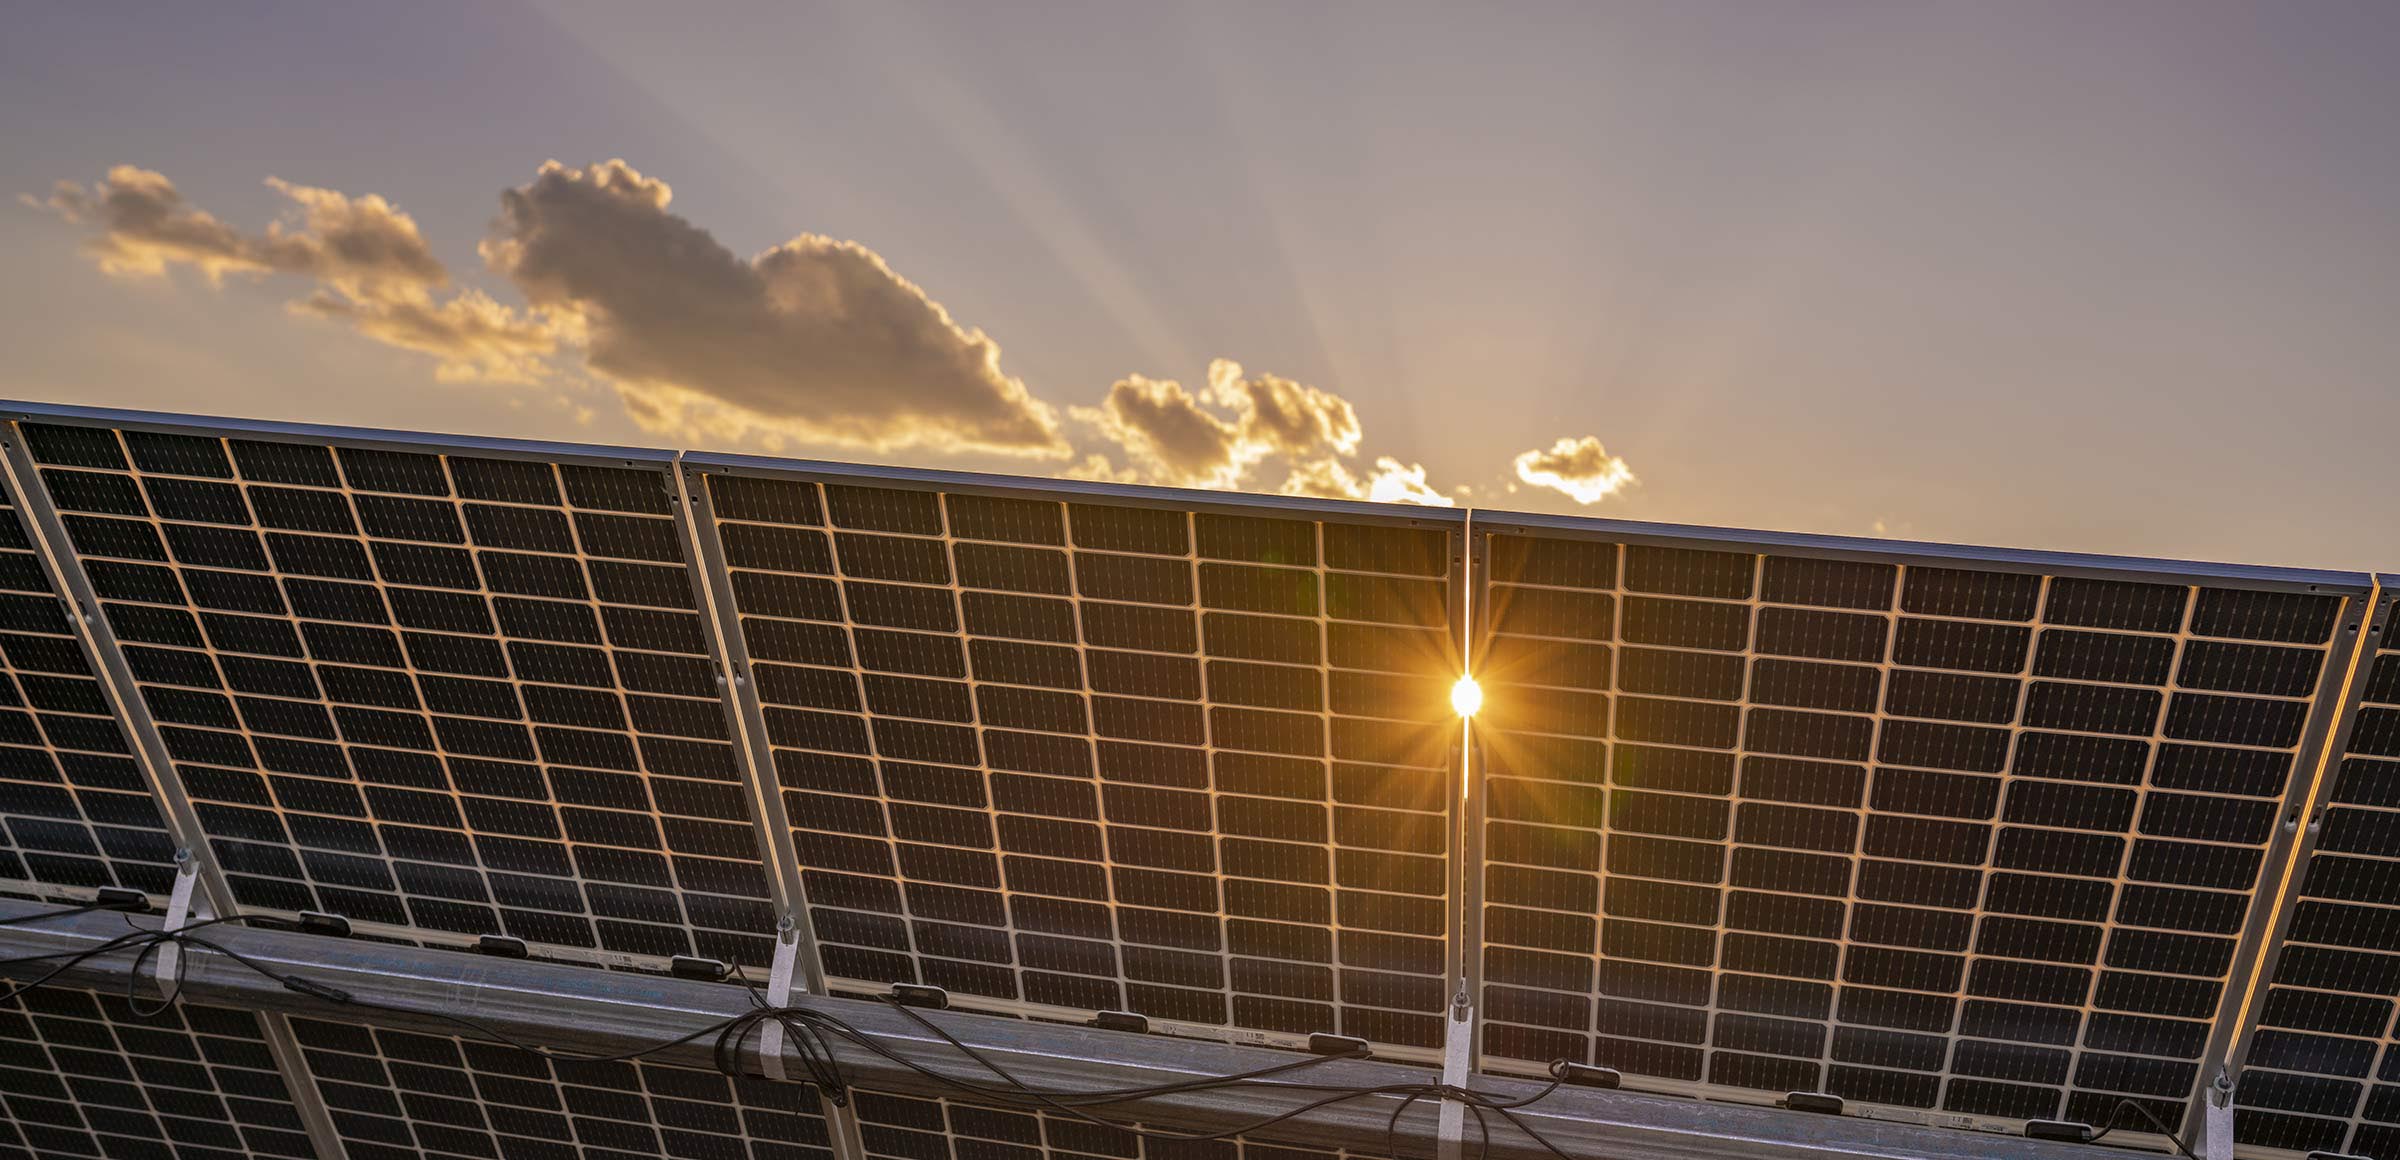 Paneles solares sostenibles: la nueva frontera industrial